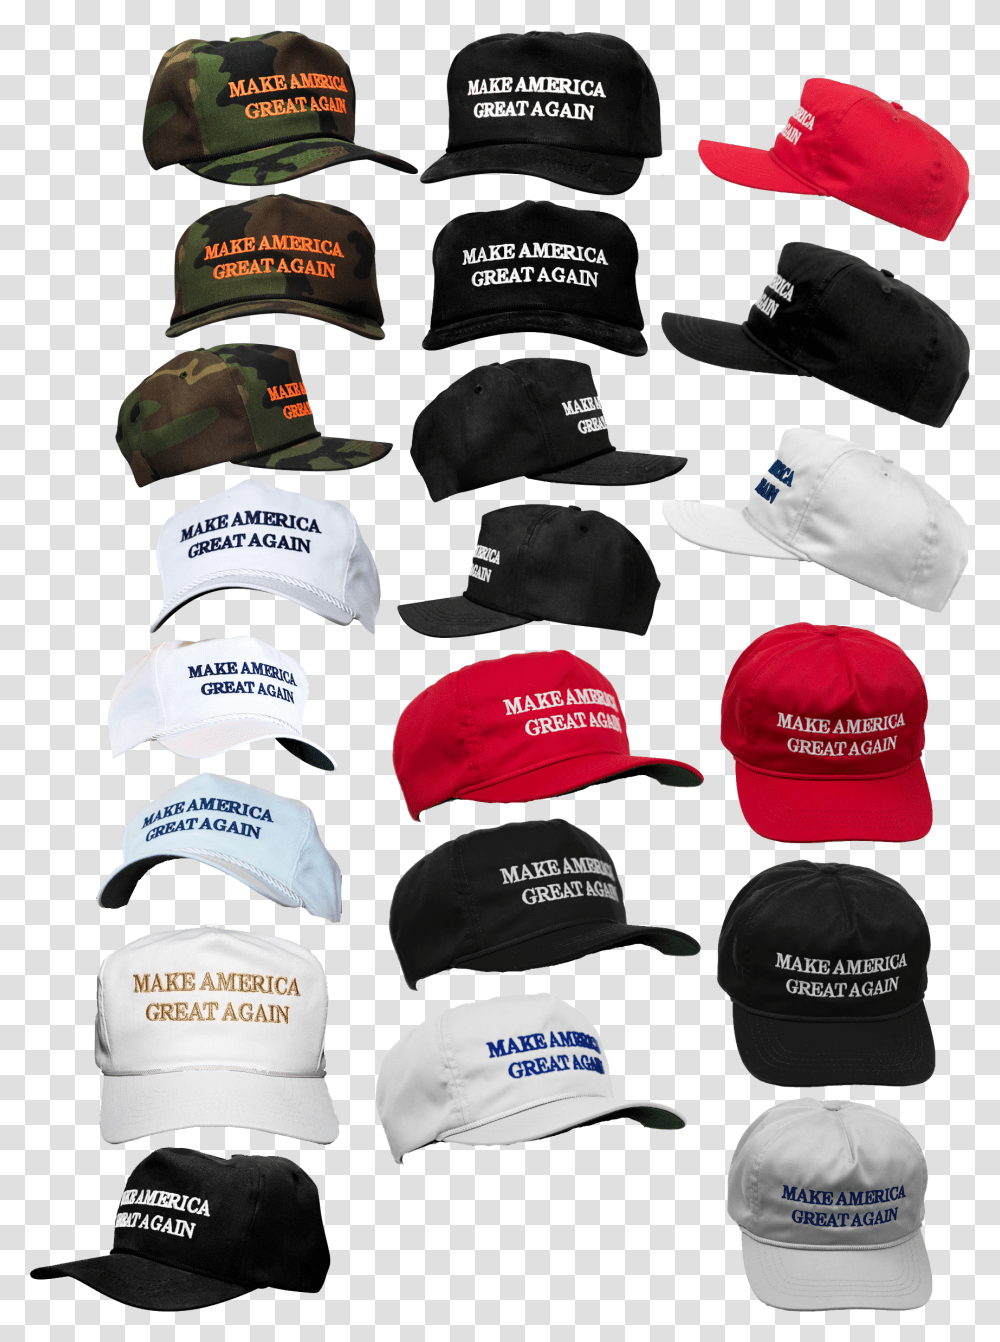 Make Americ Great Aga Makeamerica Greatagain Make America Maga Hat For Photoshop, Apparel, Cap, Baseball Cap Transparent Png